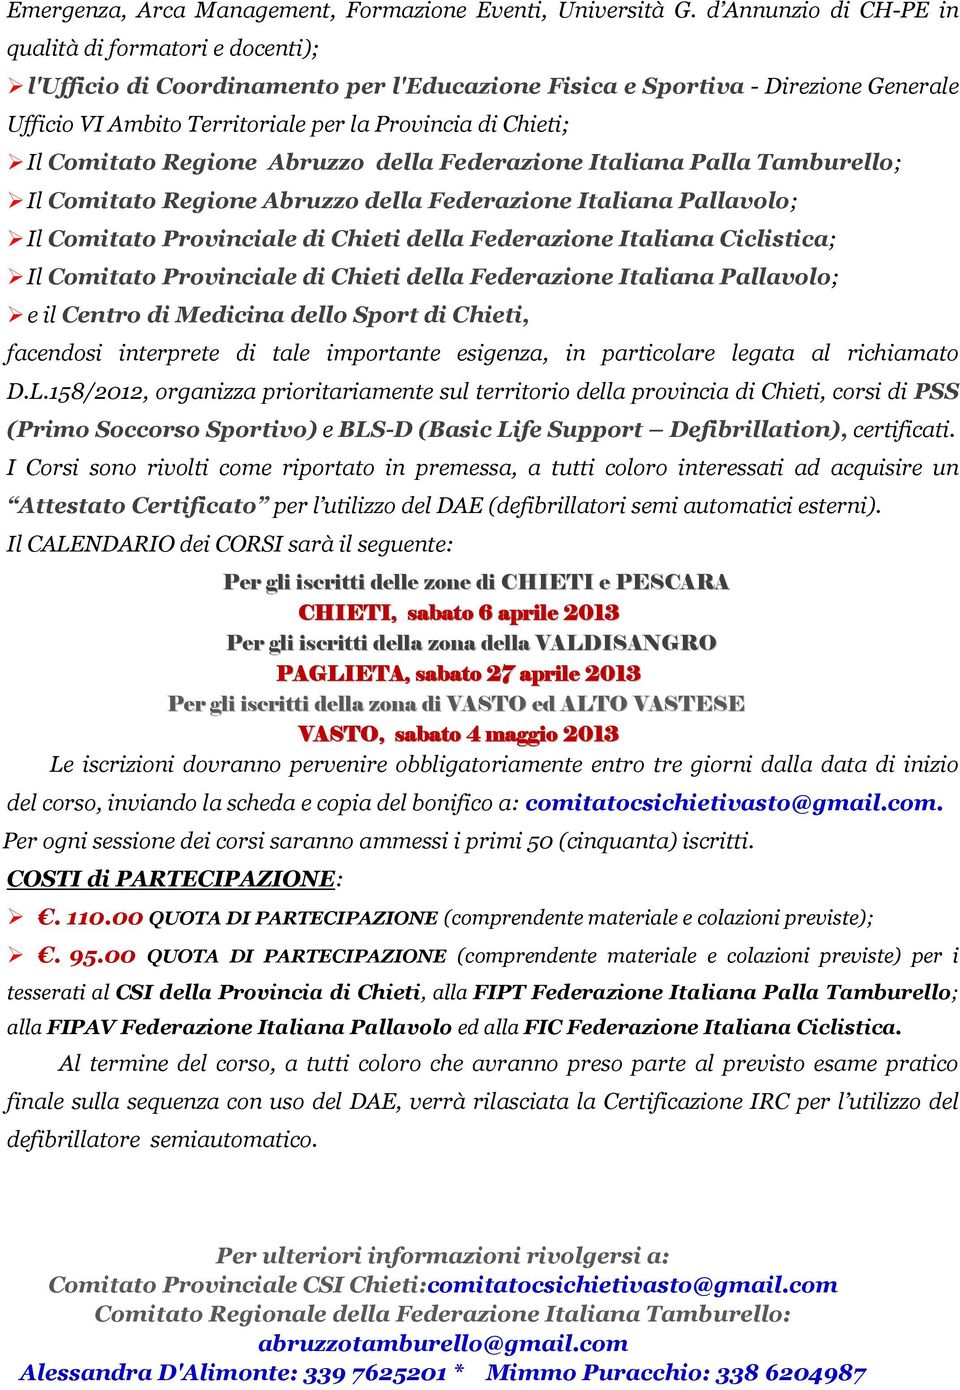 Il Comitato Regione Abruzzo della Federazione Italiana Palla Tamburello; Il Comitato Regione Abruzzo della Federazione Italiana Pallavolo; Il Comitato Provinciale di Chieti della Federazione Italiana